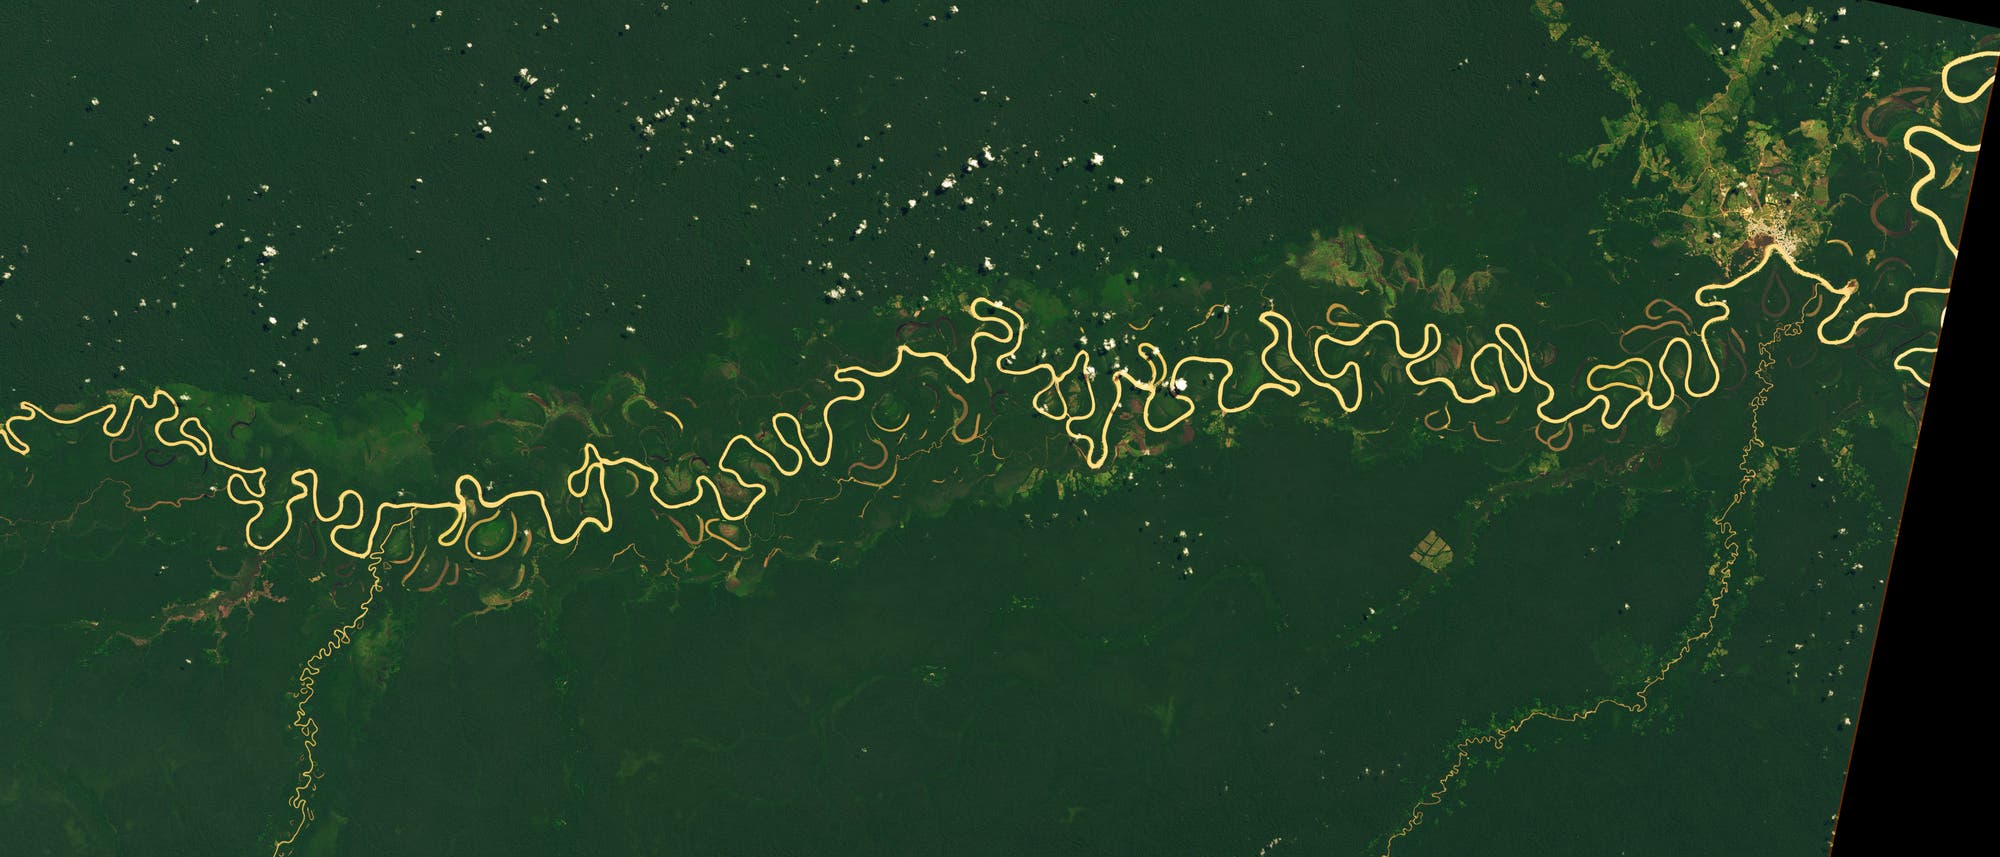 Der Juruá-Fluss in Amazonien